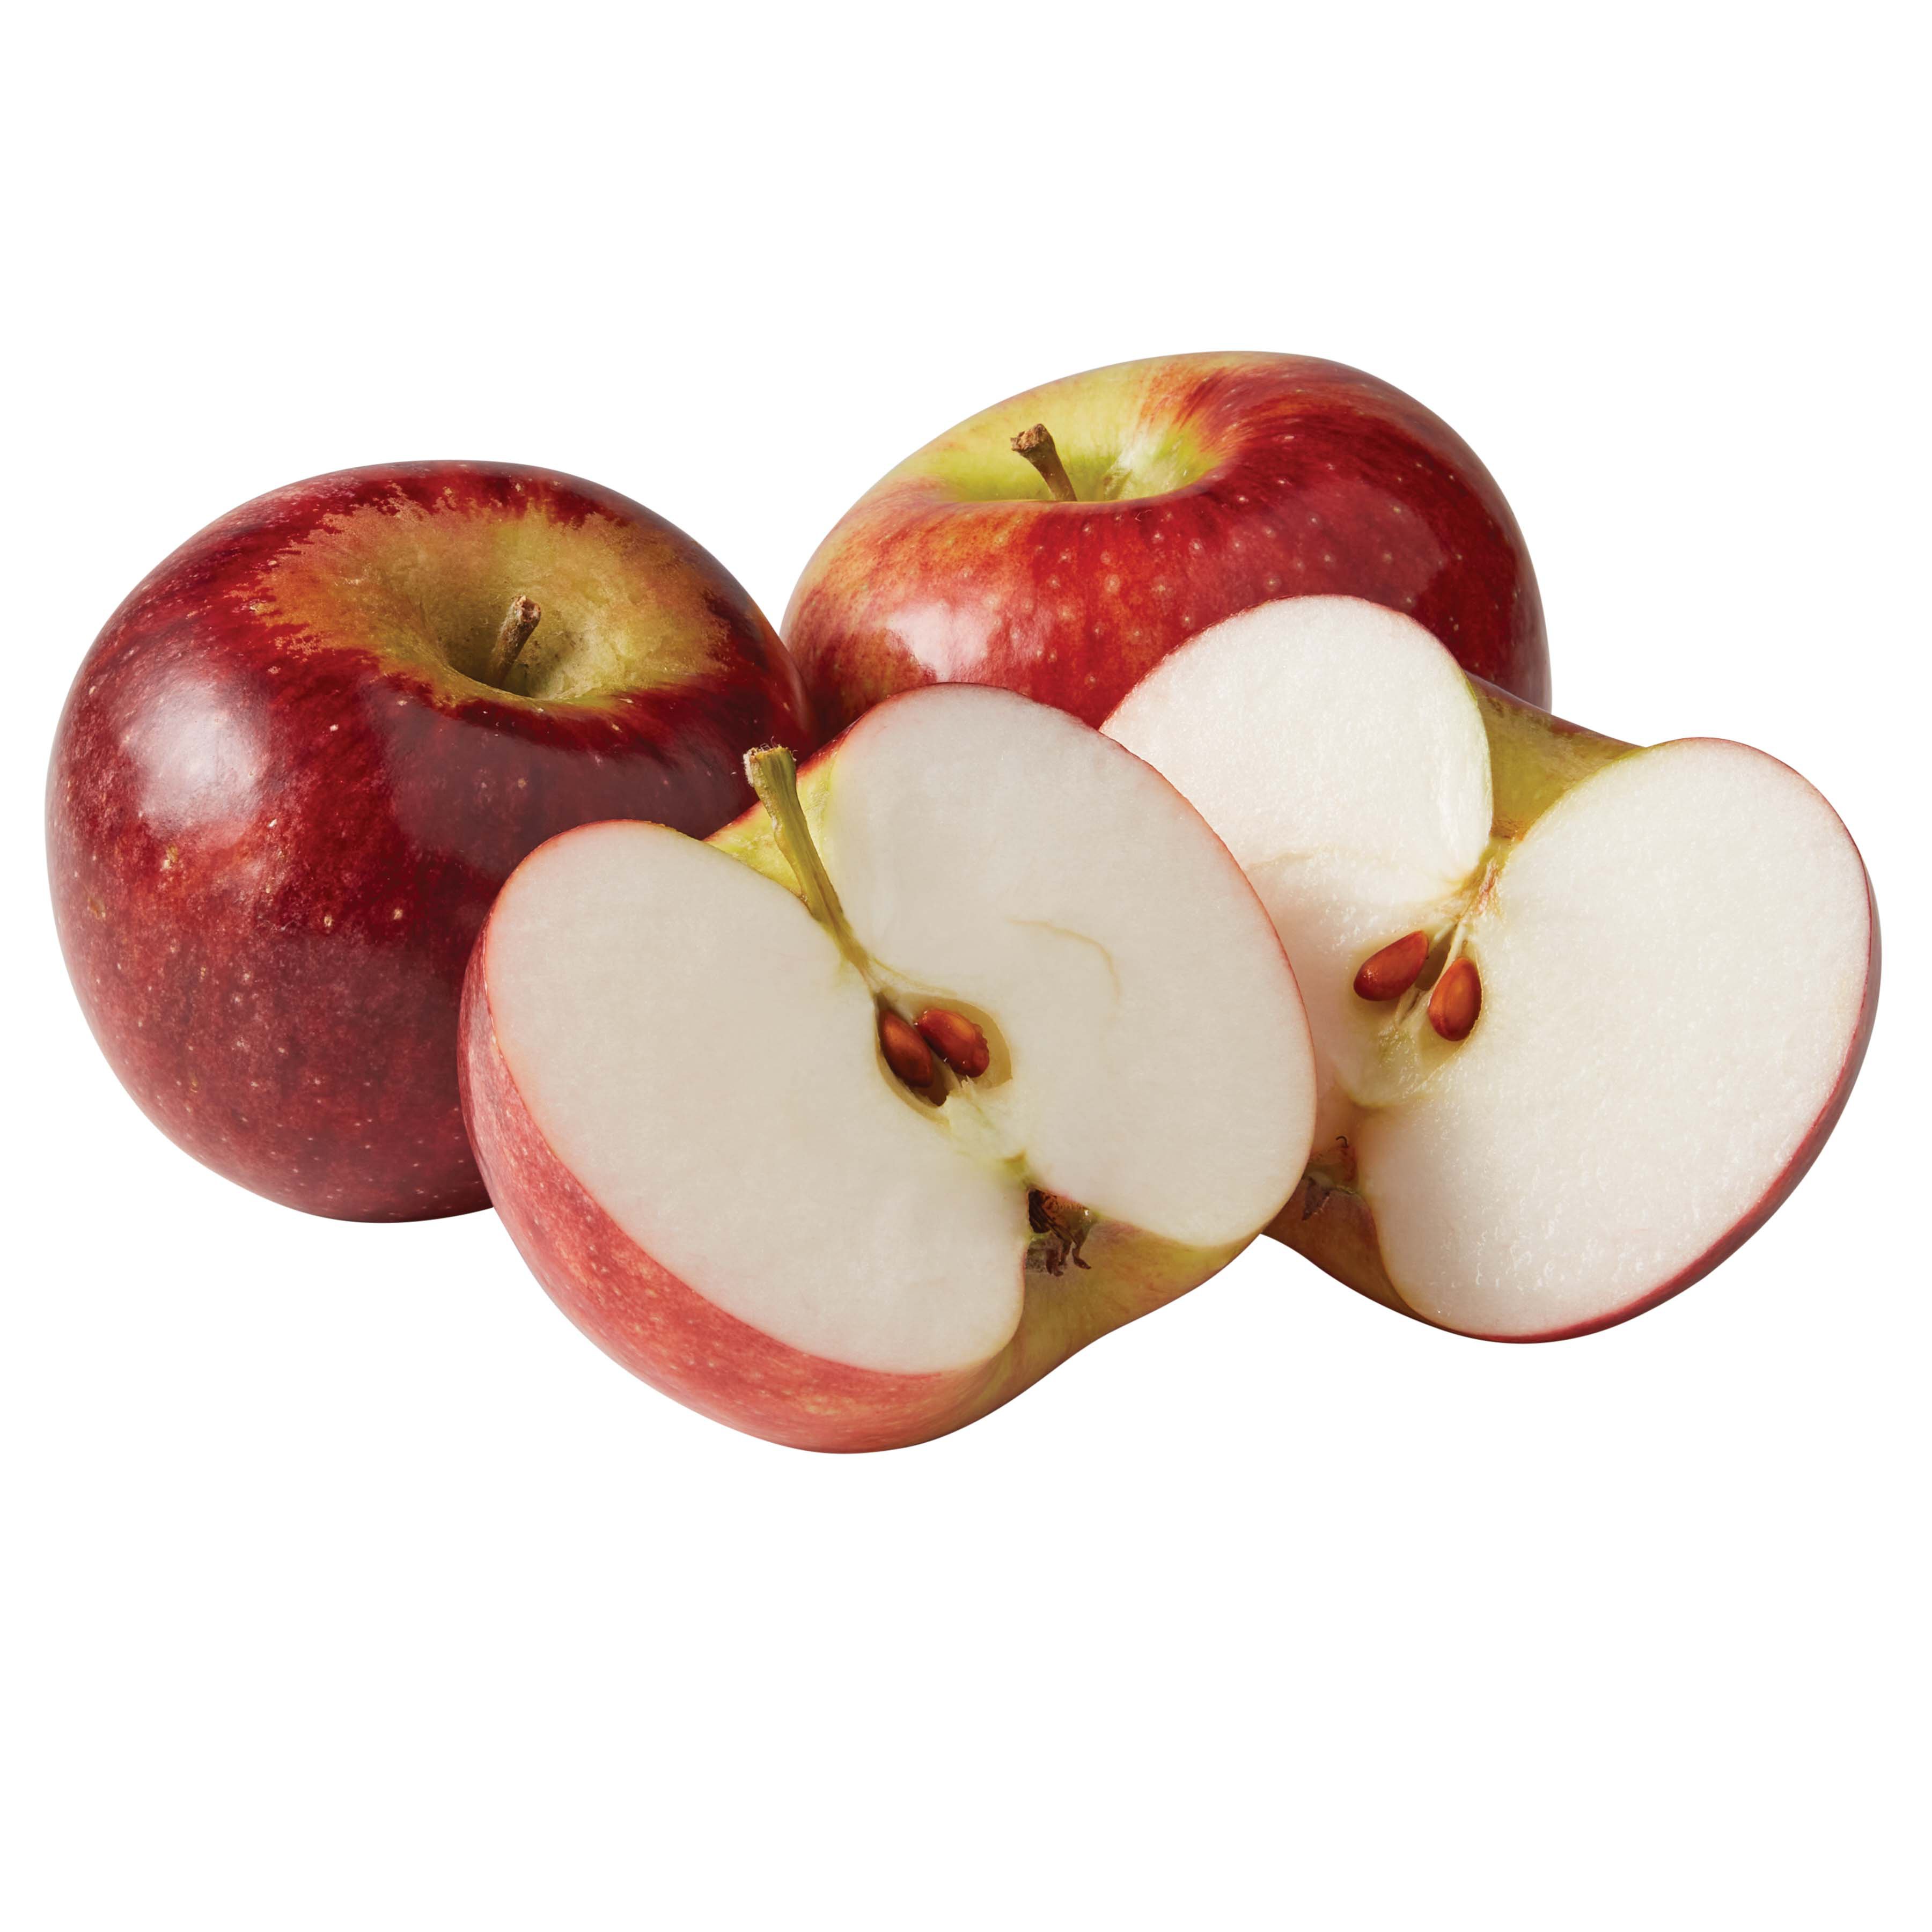 Cortland Apple - EcoApple Certified